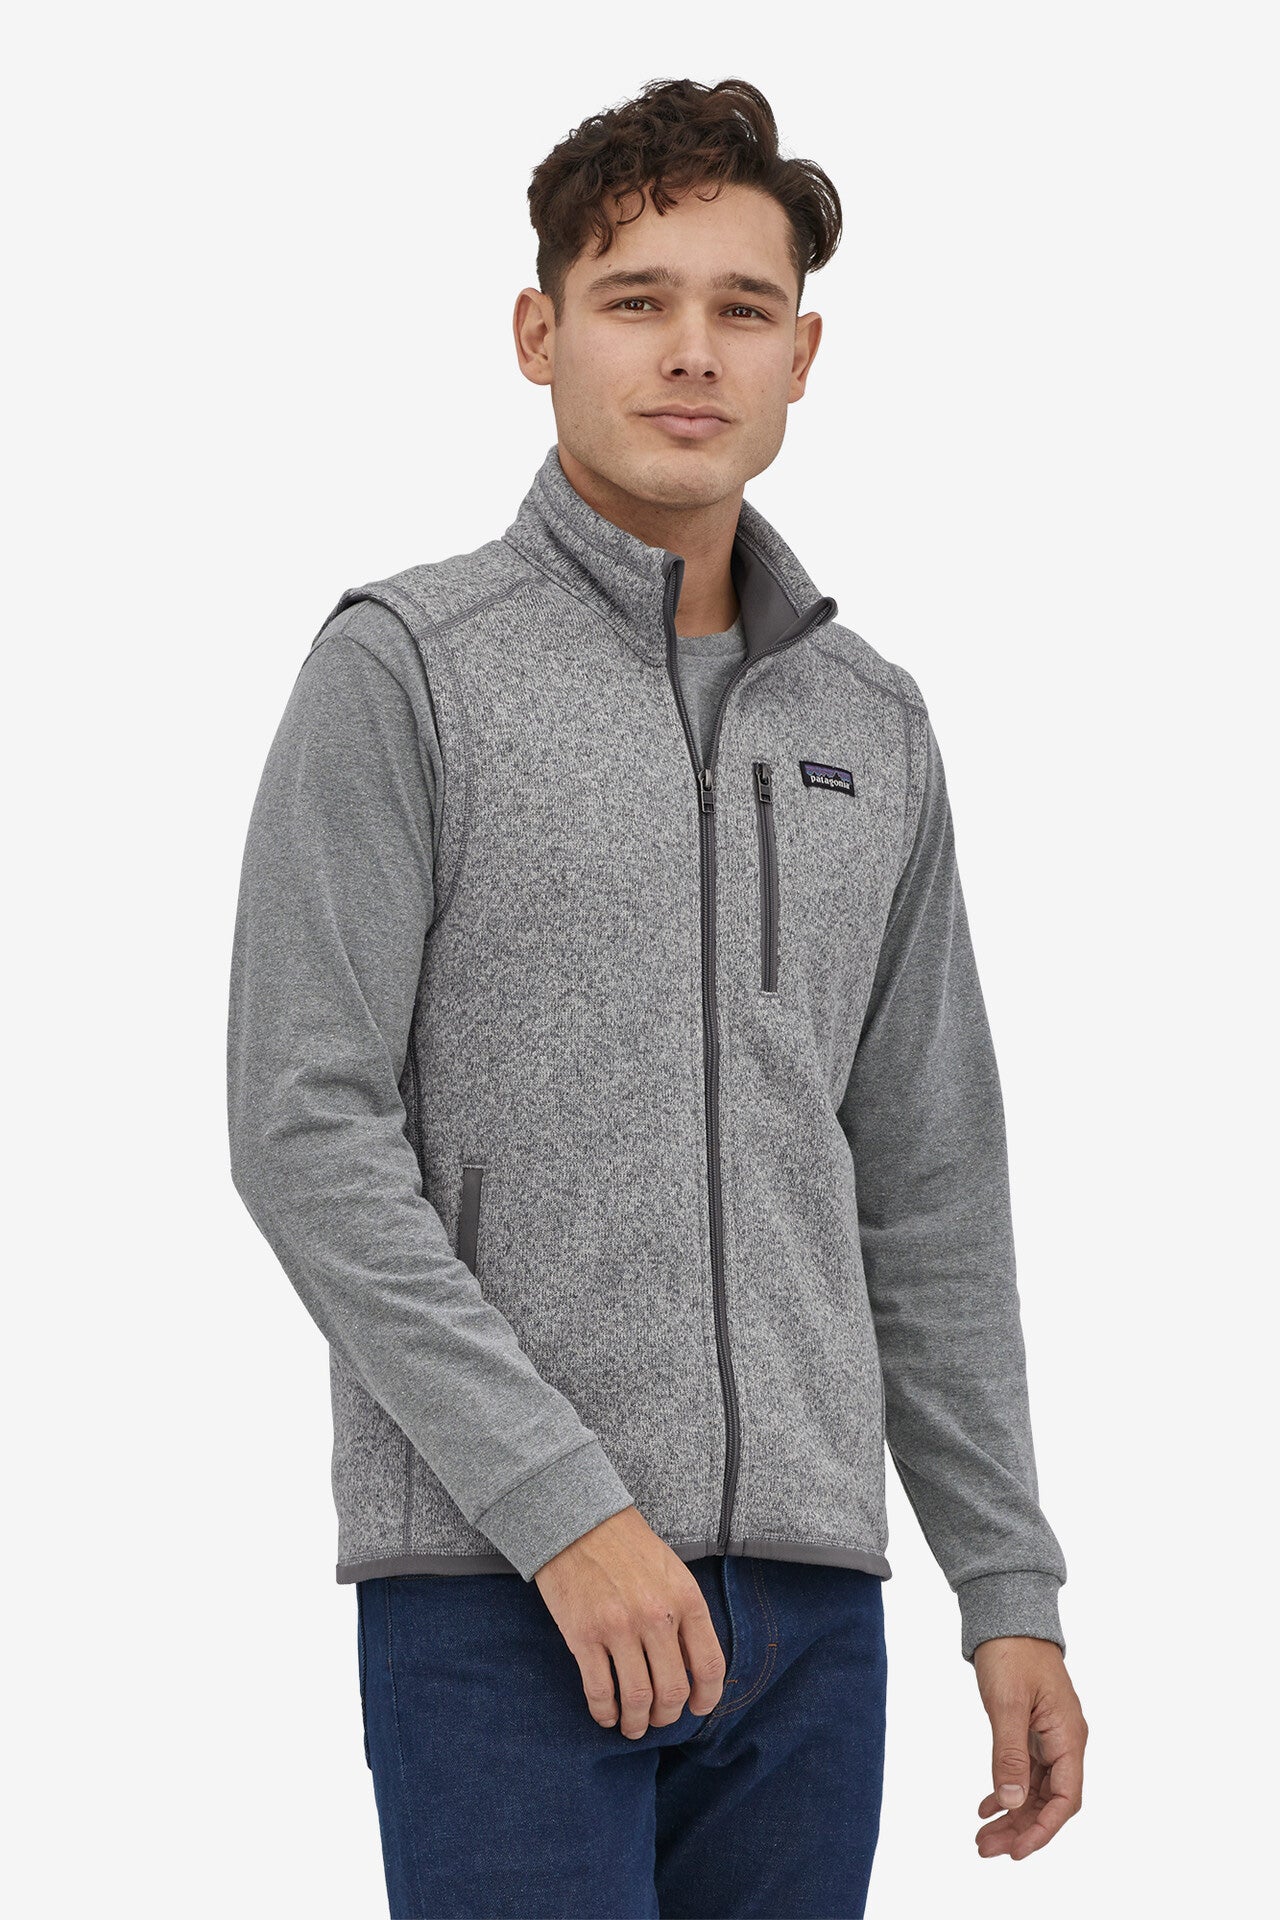 Better Sweater® Fleece Vest Vests Patagonia   